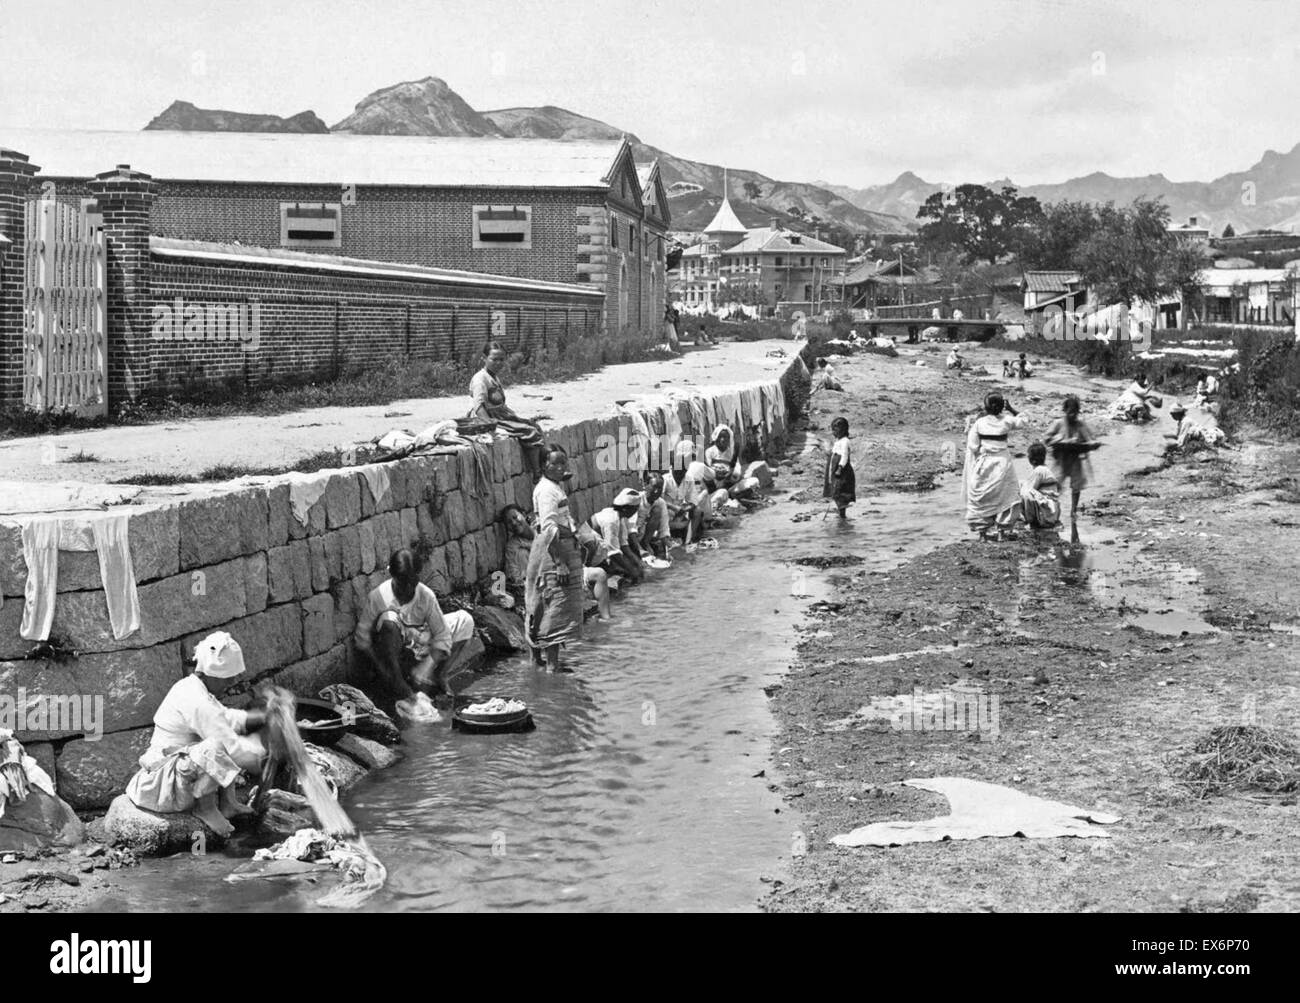 L'Inde sous le Raj britannique. Les femmes ont montré un lave-linge dans le ruisseau qui traverse une rue latérale, ca. 1904 Banque D'Images